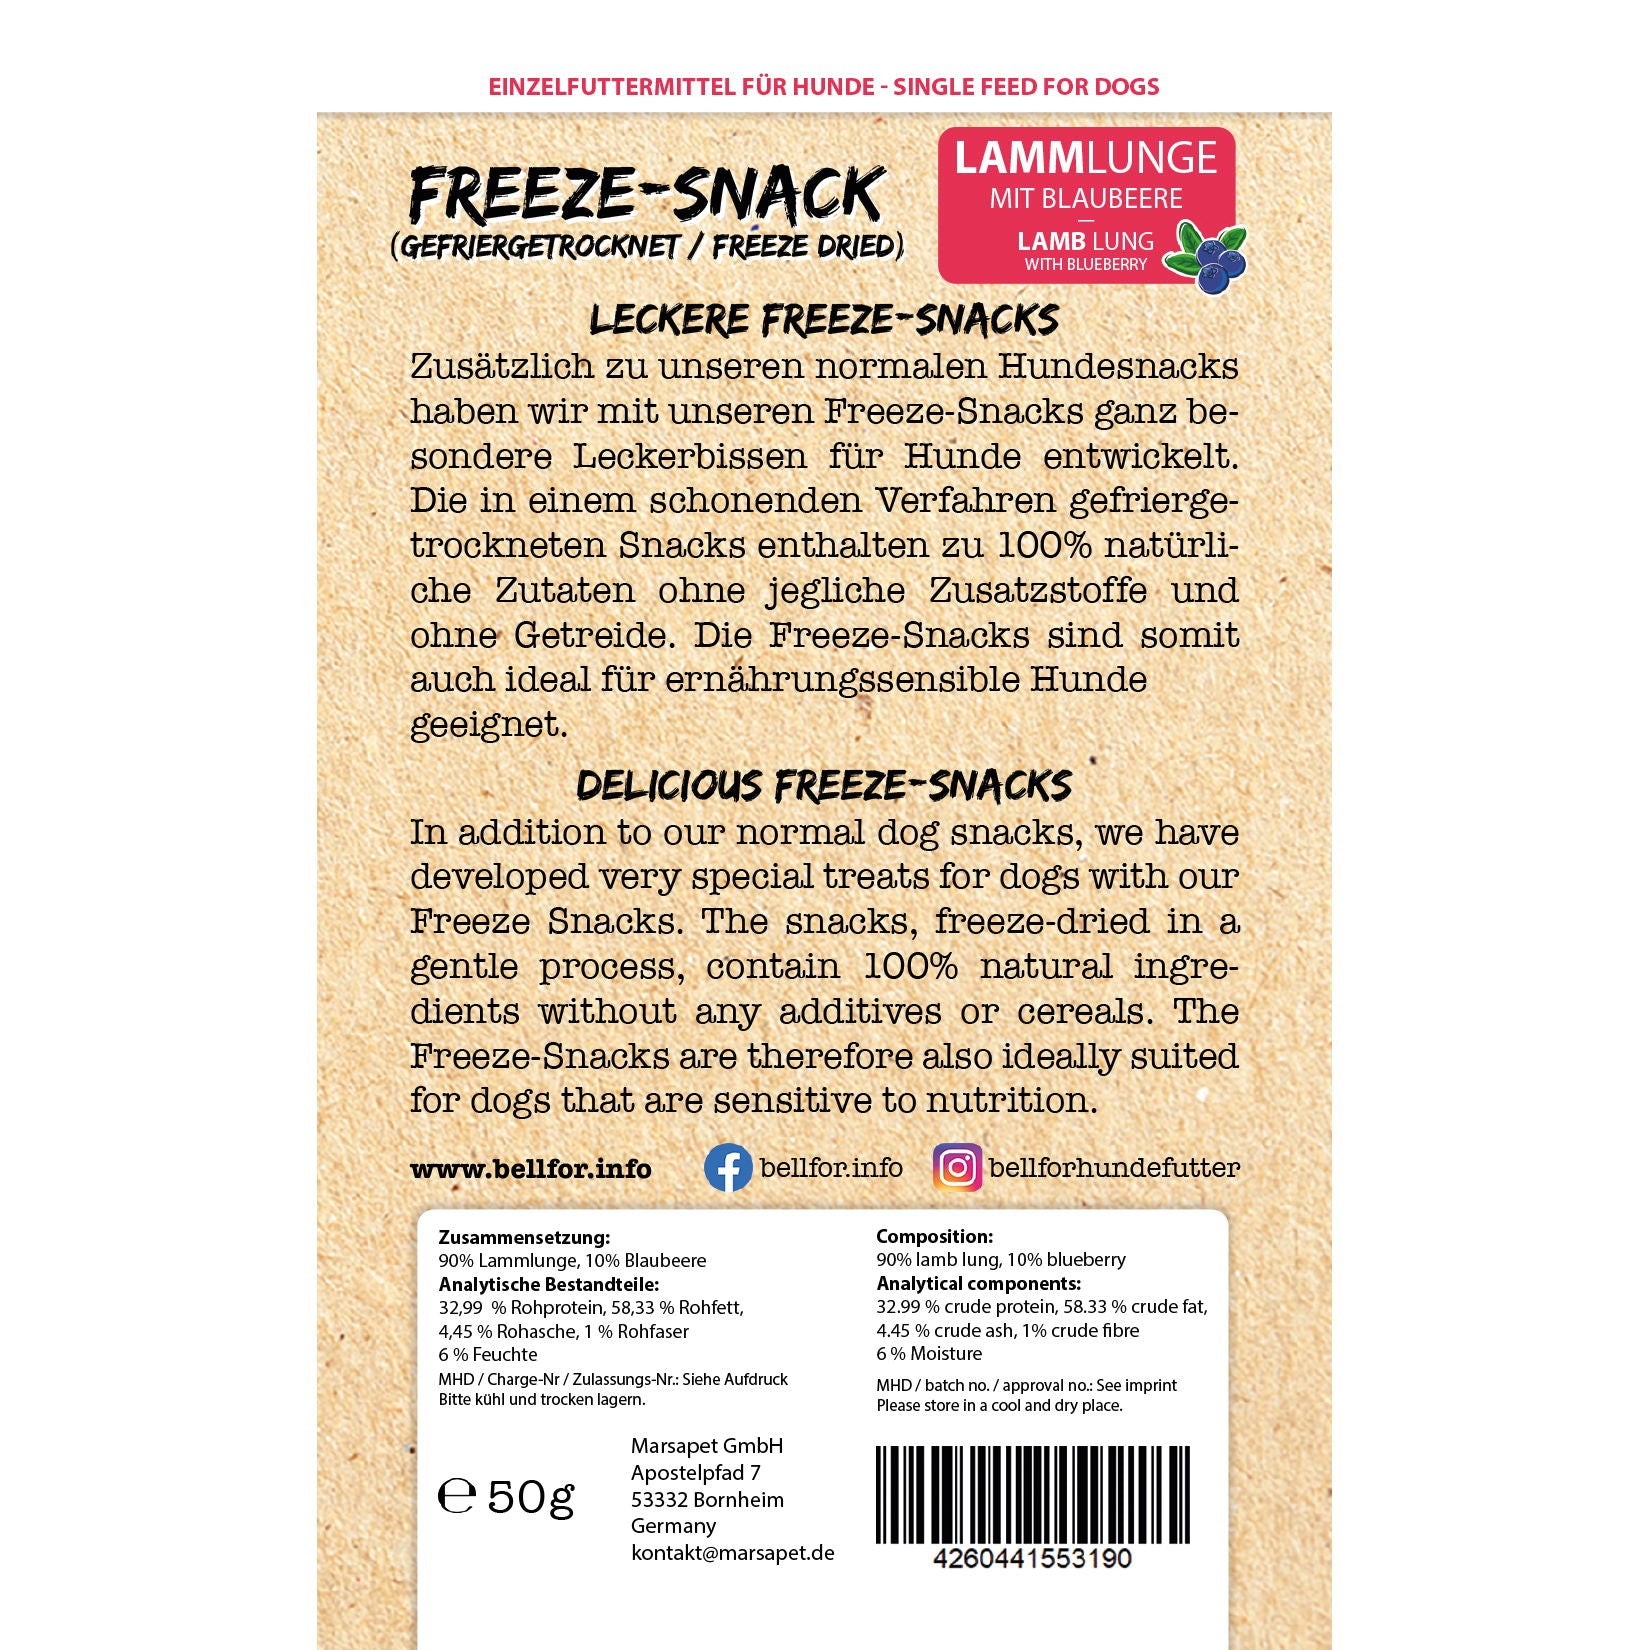 Gesunder Freeze-Snack für Hunde - Lammlunge mit Blaubeere (gefriergetrocknet) von Bellfor Hundefutter - 50g